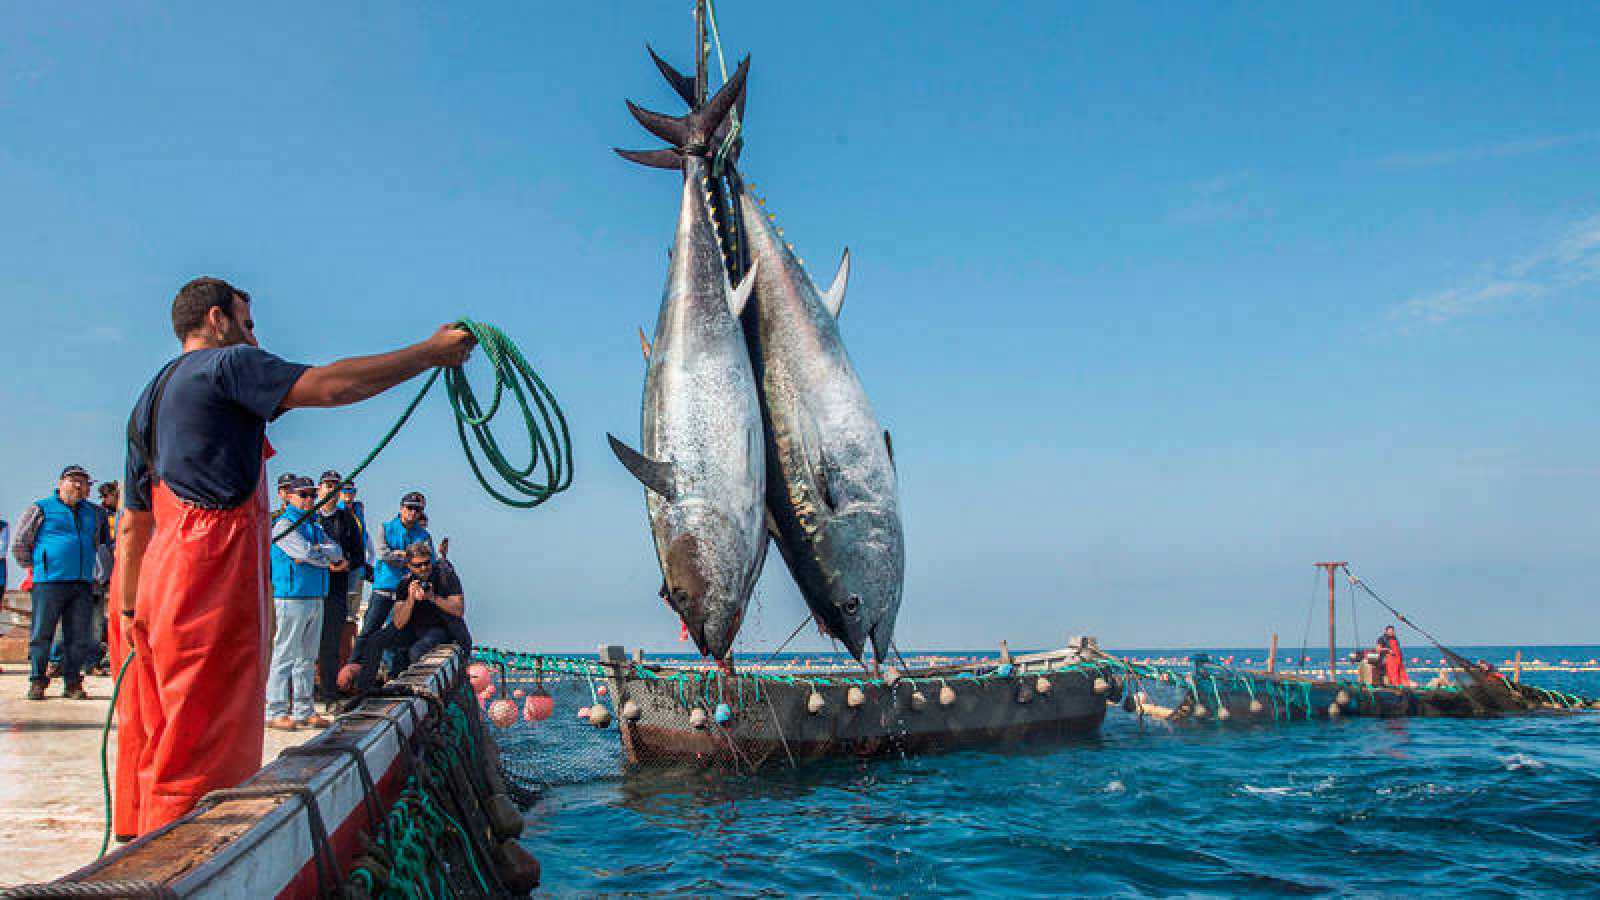 أعلن المغرب، الأربعاء، أن تجديد اتفاقية الصيد البحري مع الاتحاد الأوروبي مرهون بتقييمها على المستوى الحكومي.